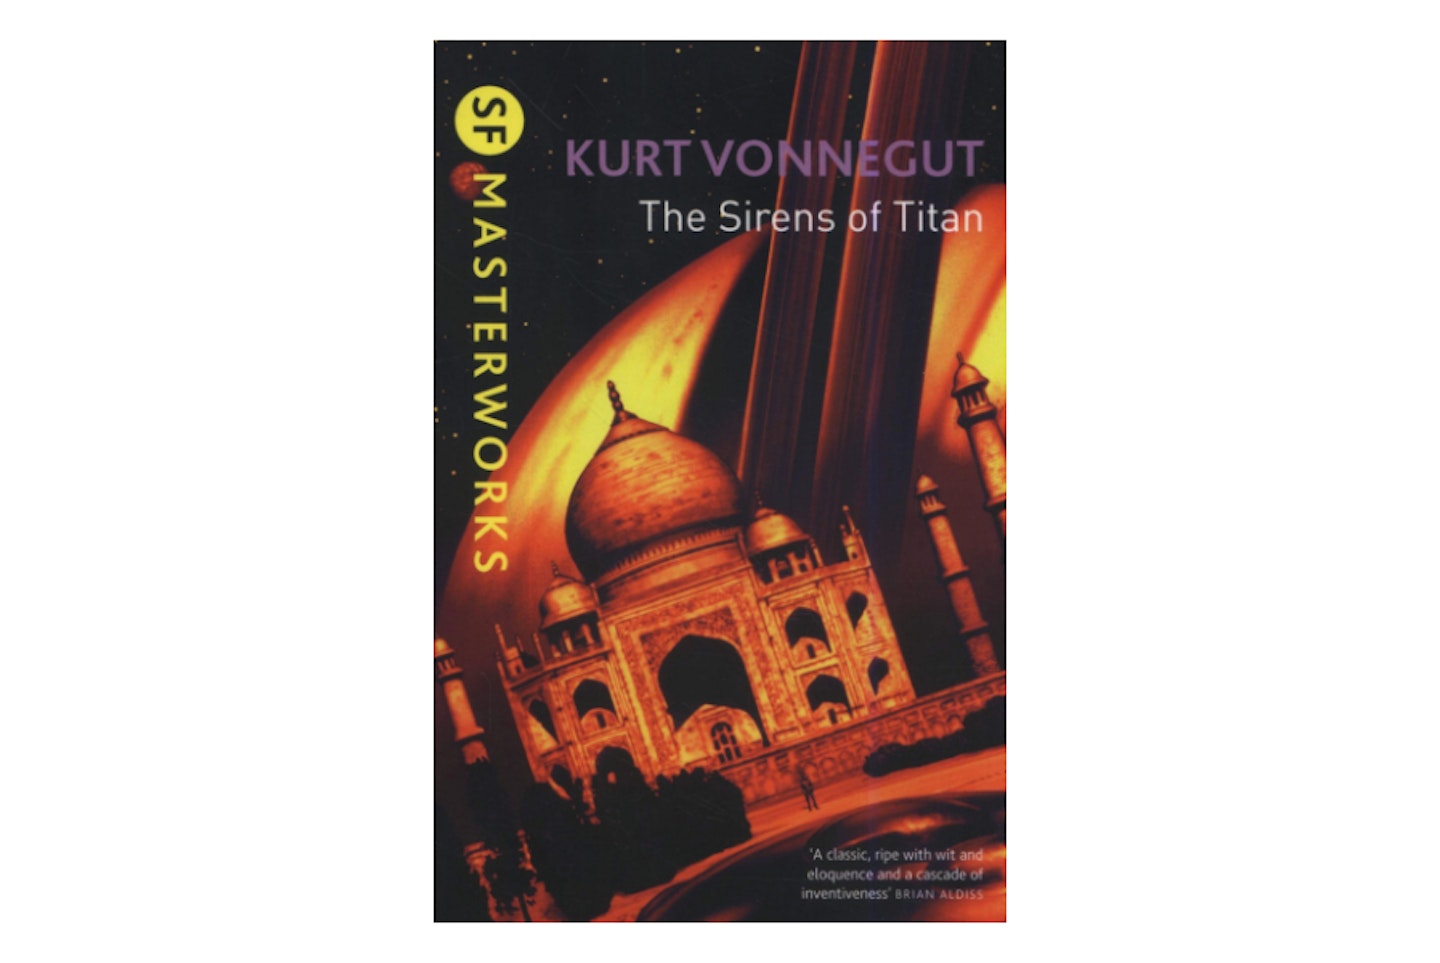 The Sirens of Titan by Kurt Vonnegut, 1958